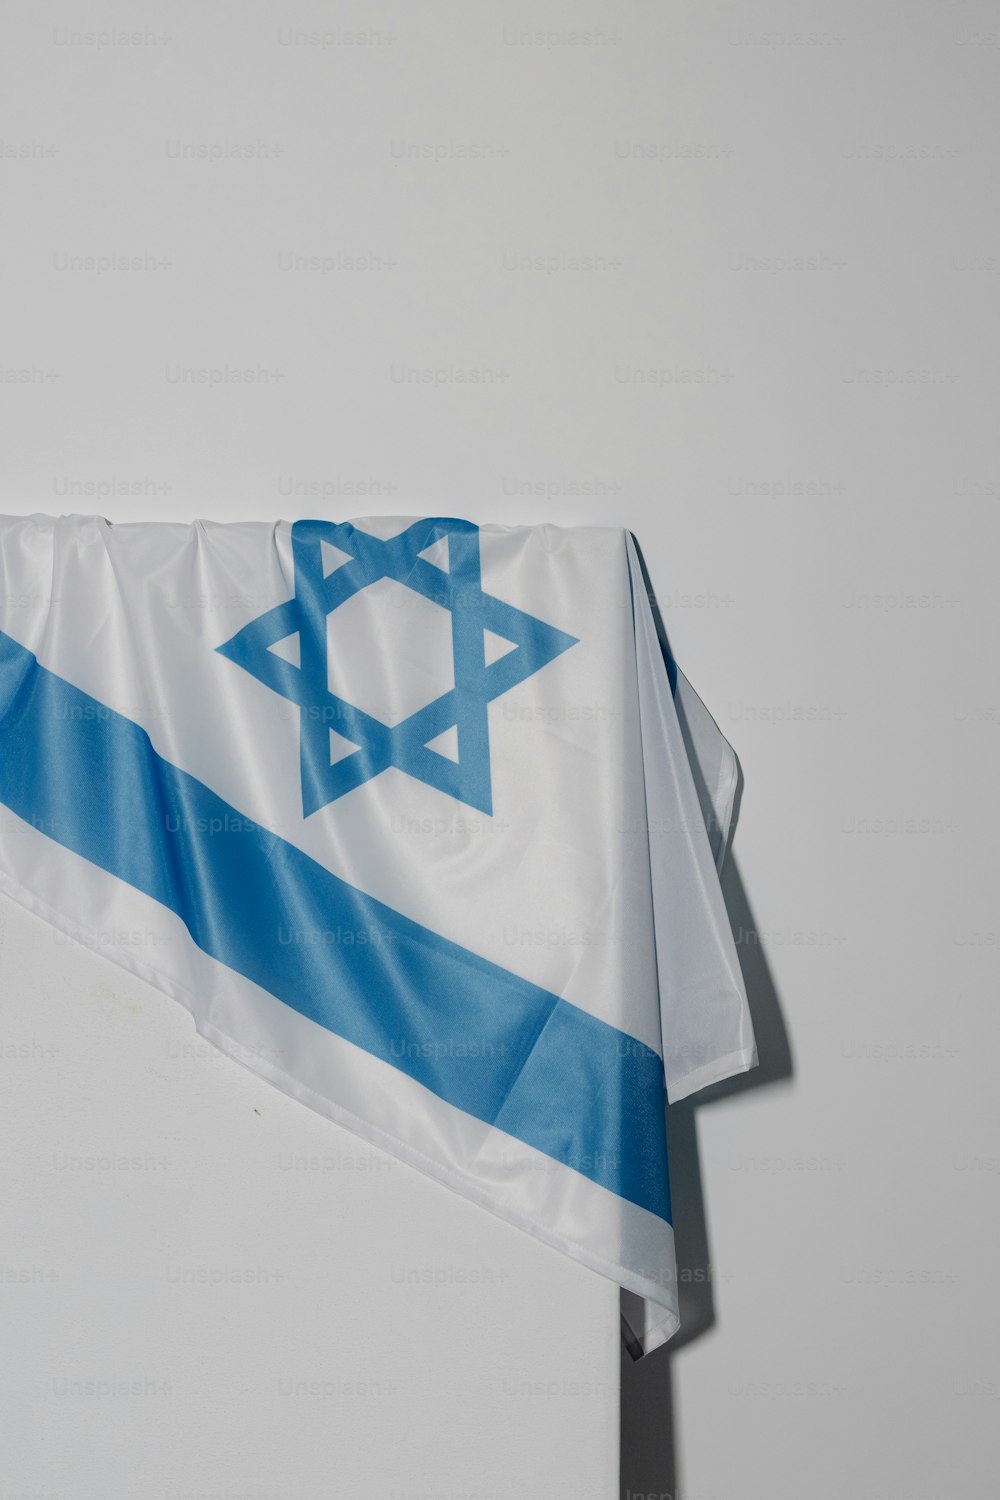 Un drapeau avec une étoile de David dessus